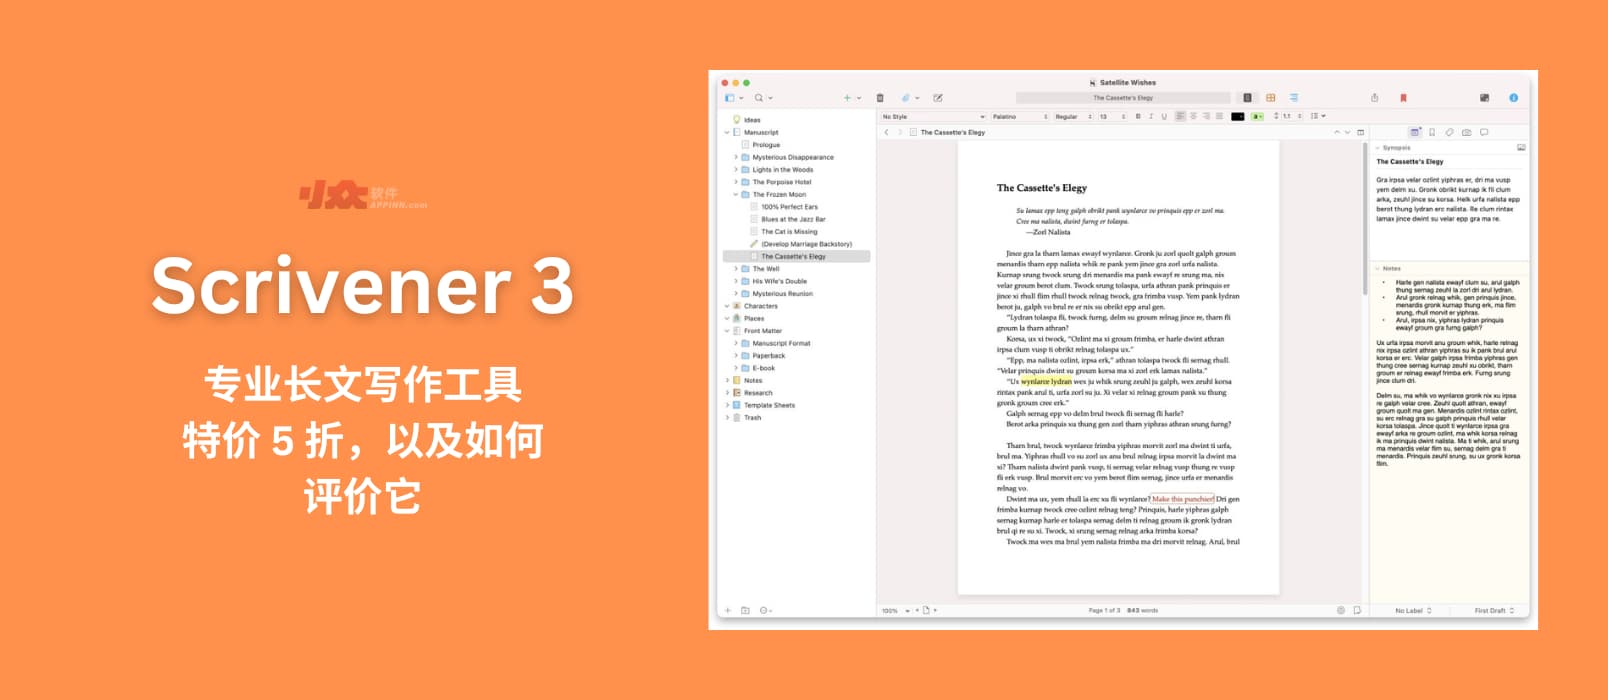 Scrivener 3 - 专业写作软件，特价 5 折